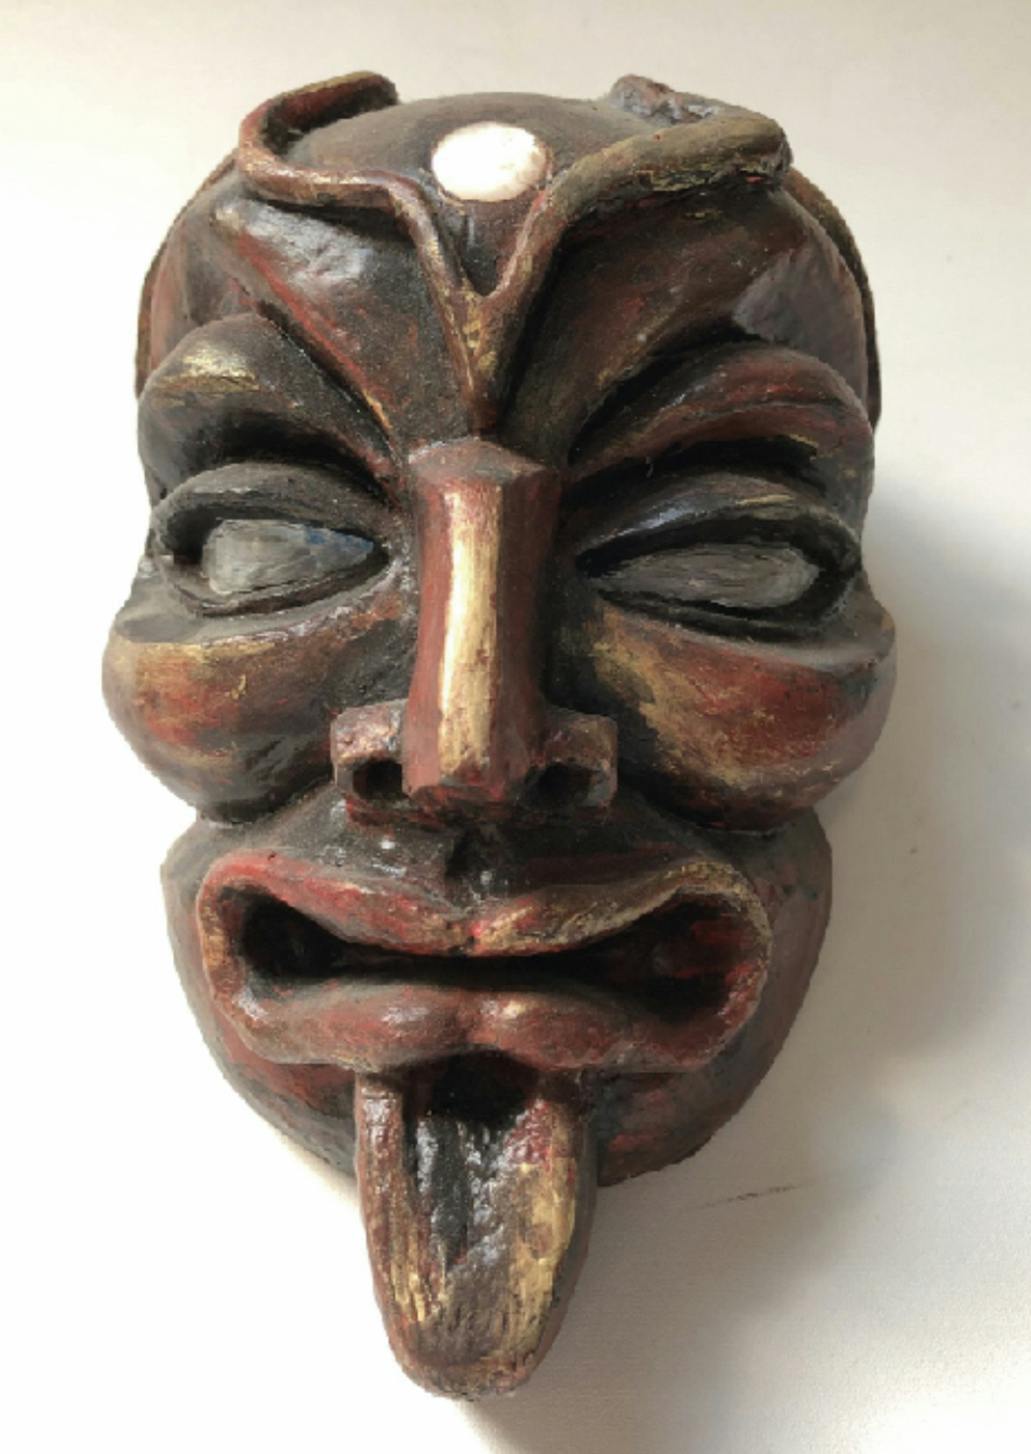 A ceramic sculpture of a mask.